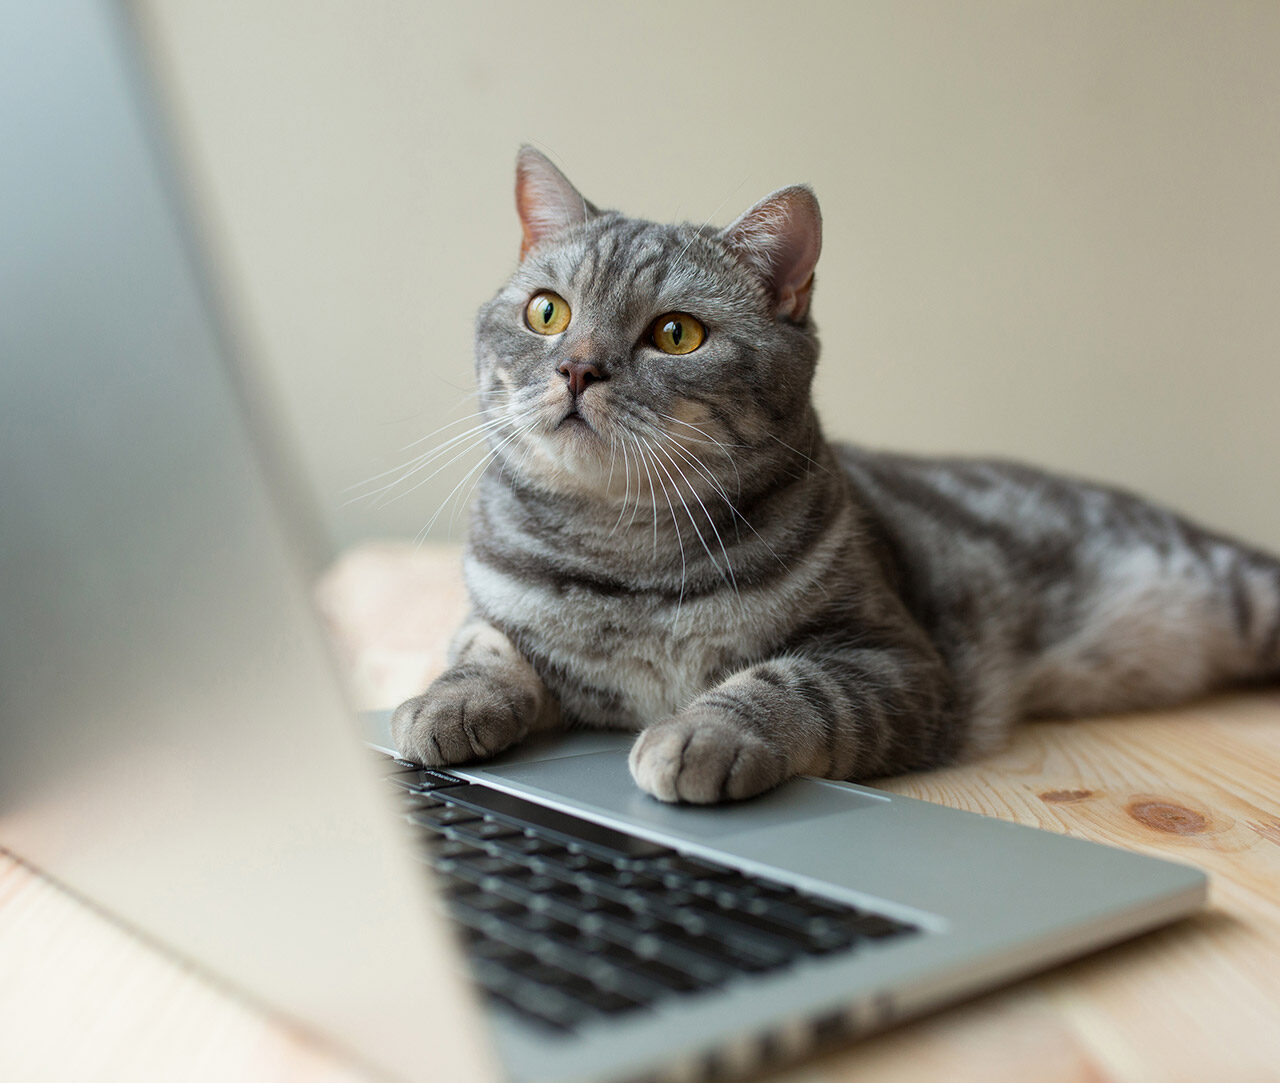 Katze am Laptop